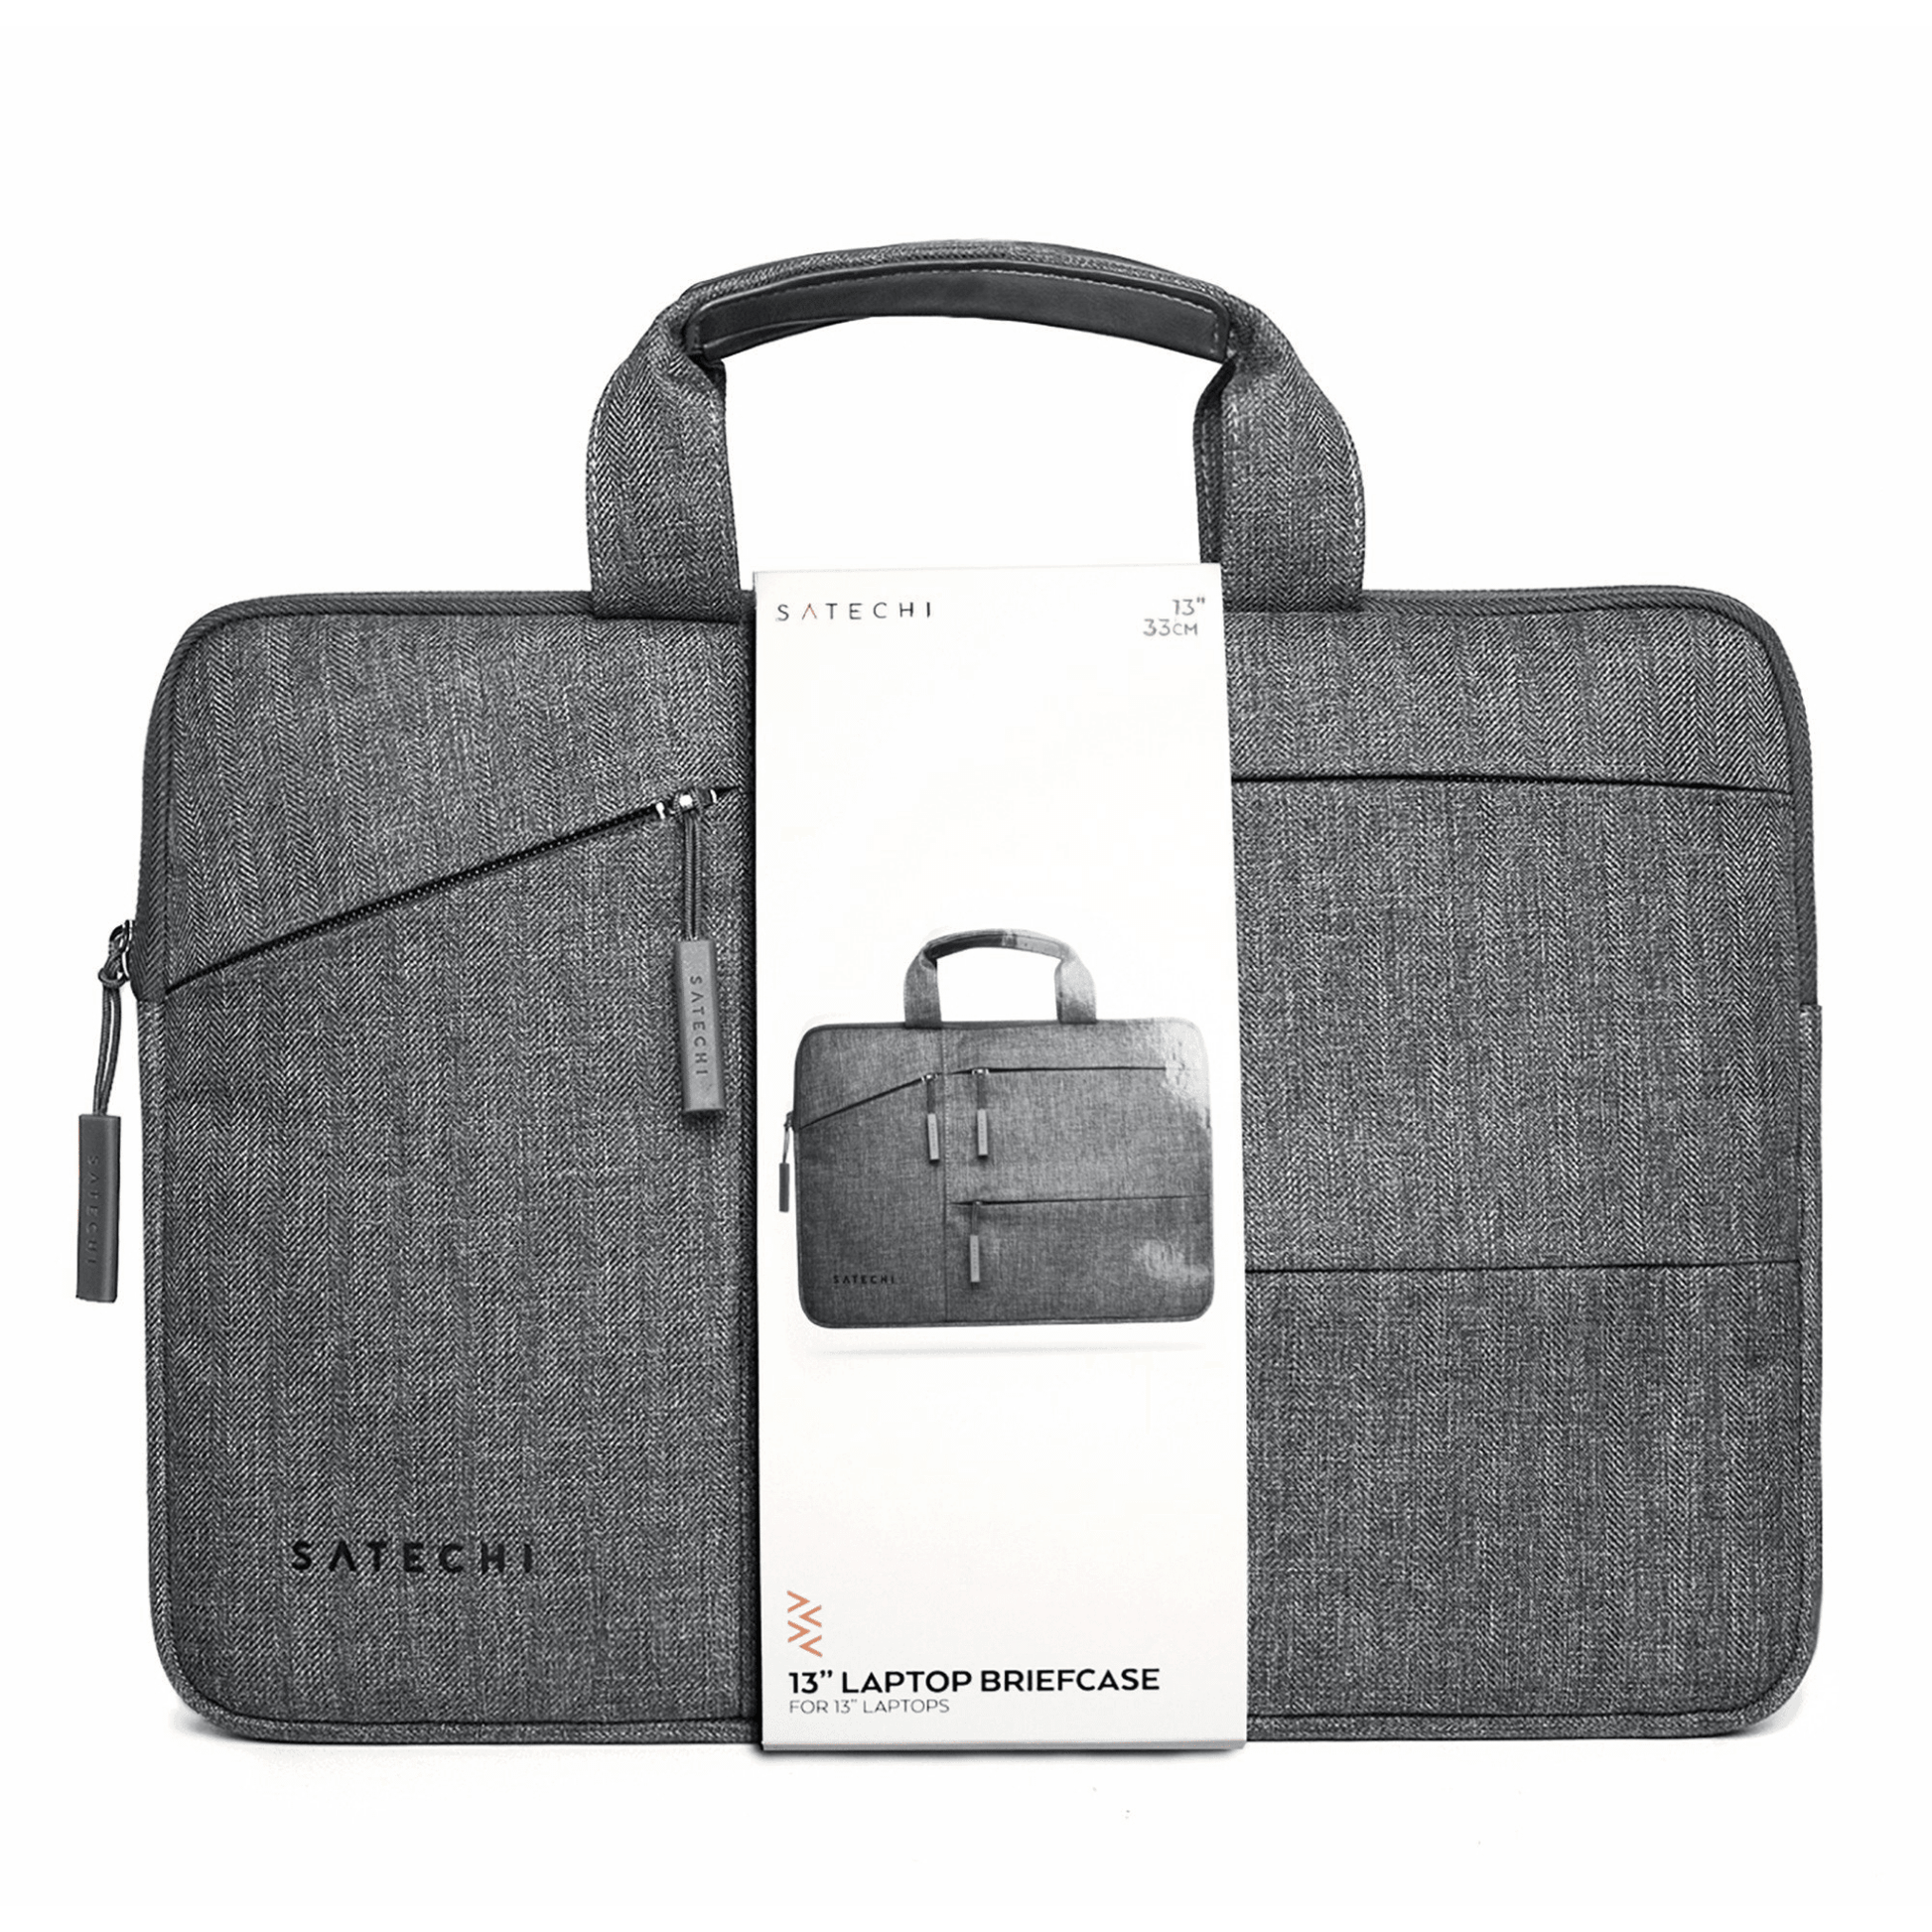 Satechi - Wasserresistente Laptoptasche 13“ mit praktischen Taschen an der Vorderseite - Grau